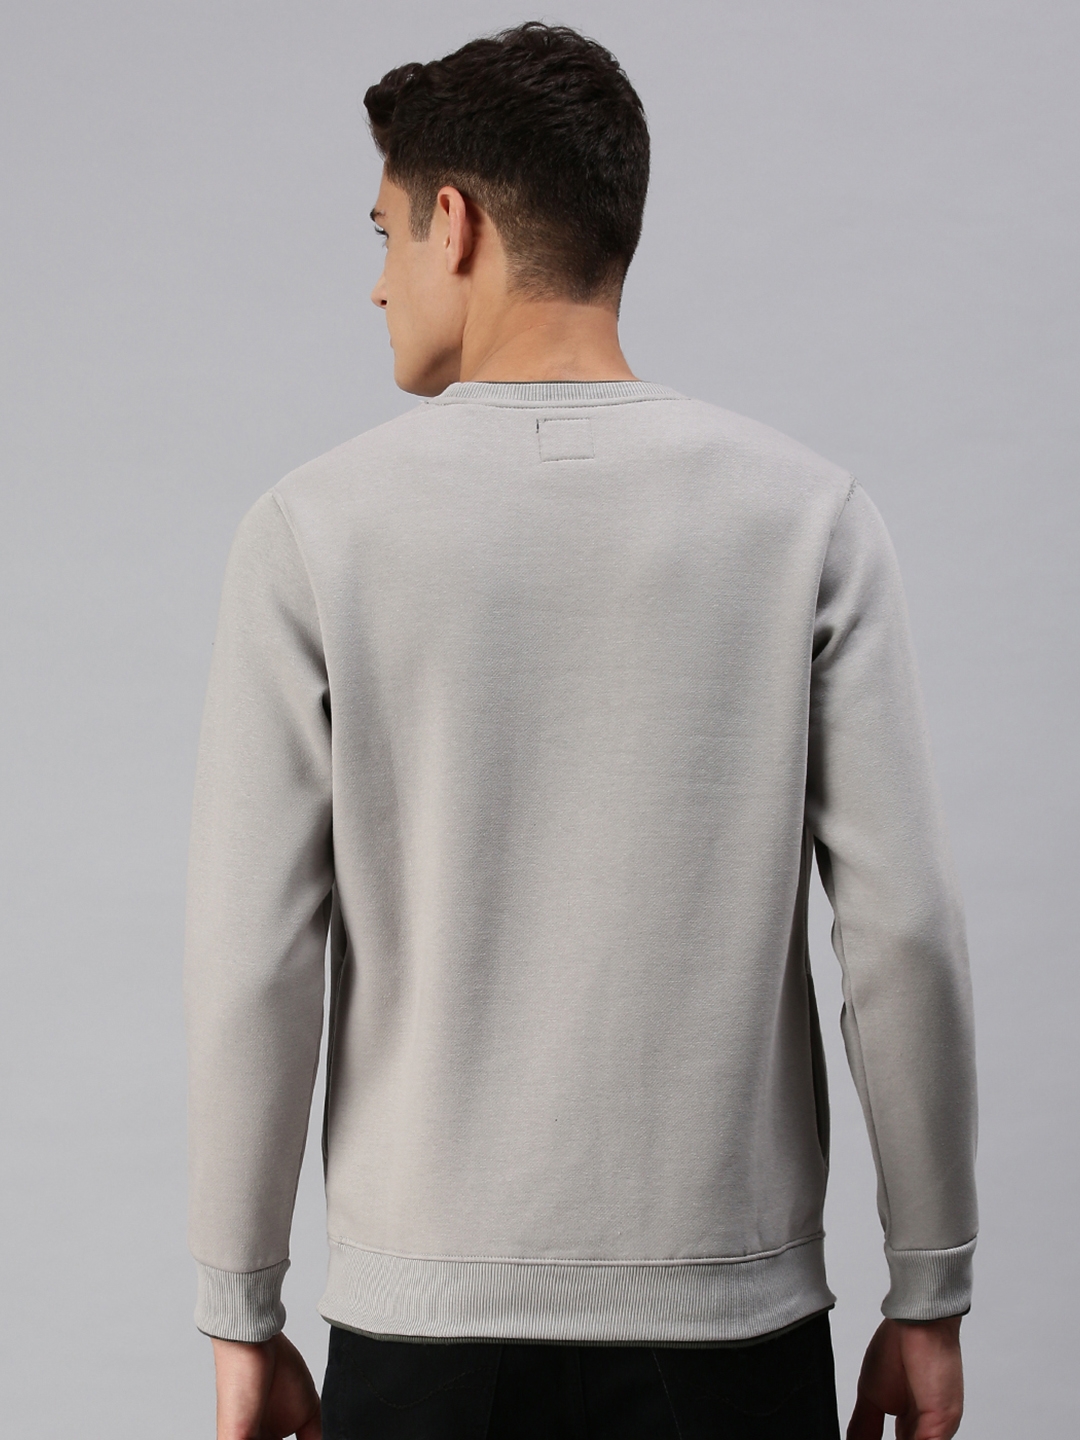 Men's Grey Cotton Solid Sweatshirts